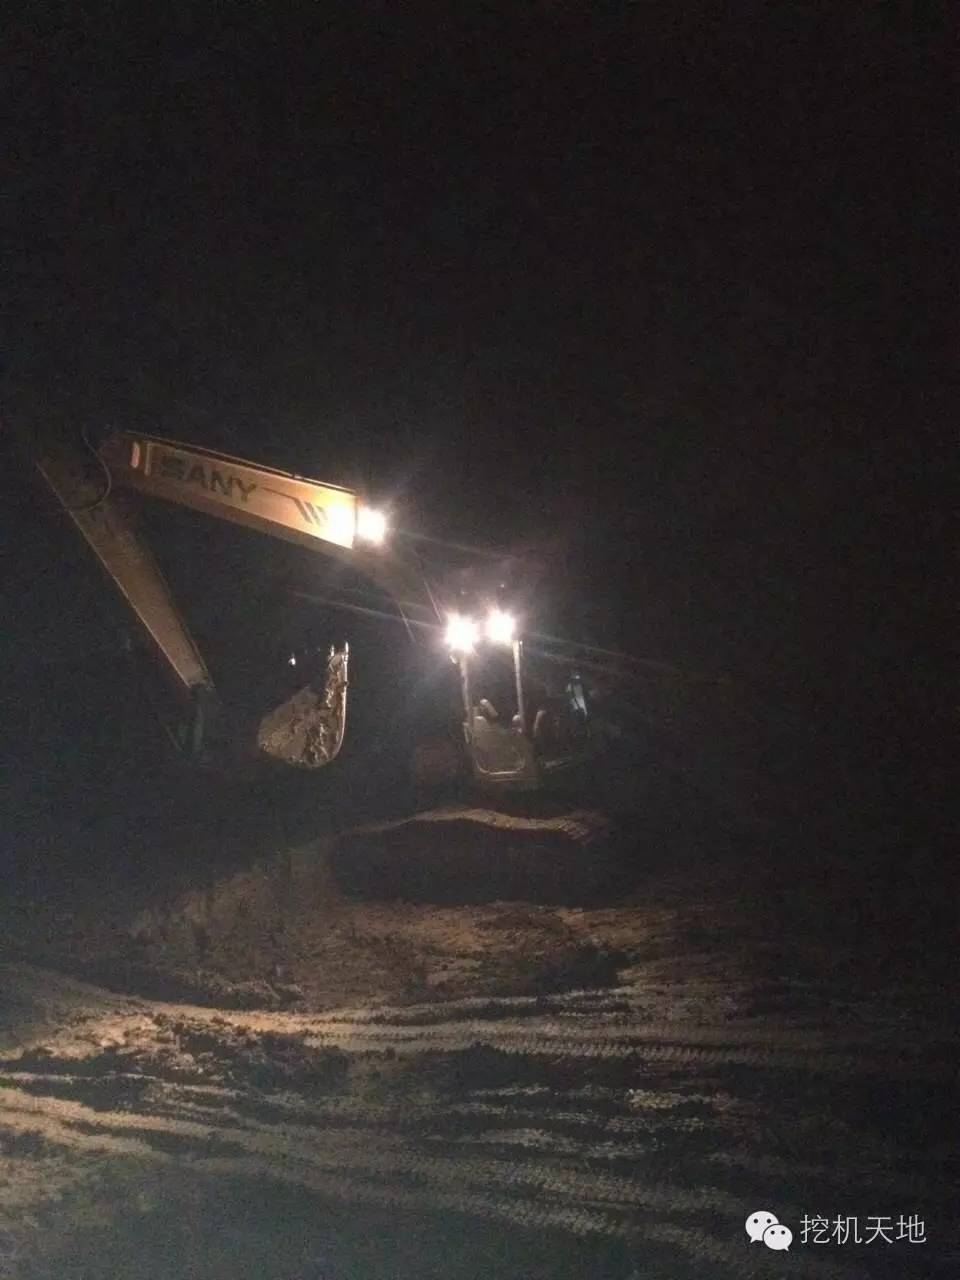 多少个夜晚, 我们为了这台挖机而睡不着!